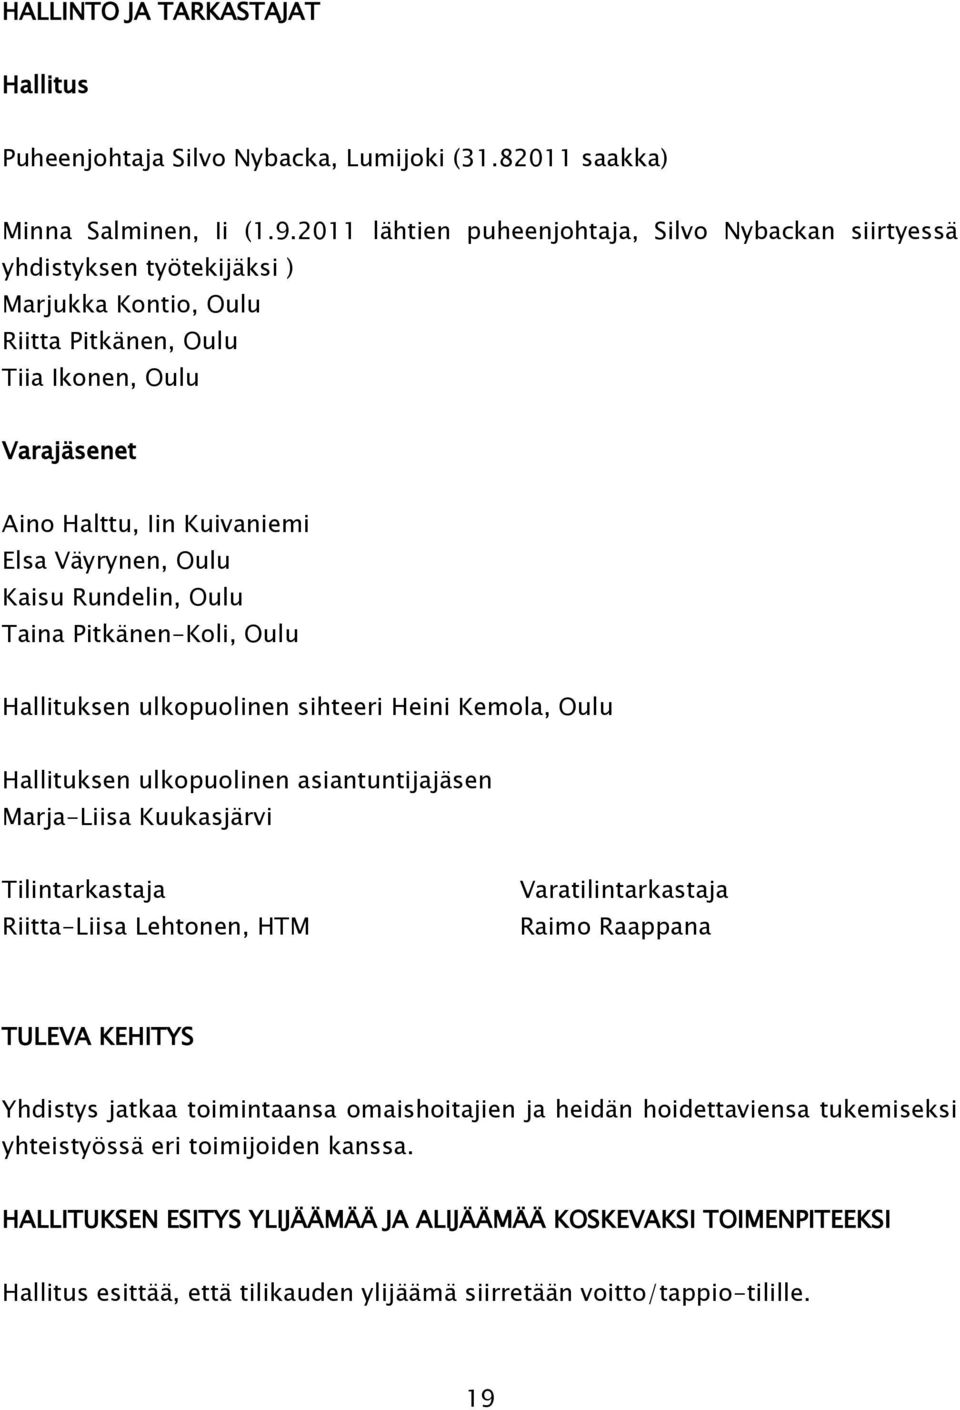 Oulu Kaisu Rundelin, Oulu Taina Pitkänen-Koli, Oulu Hallituksen ulkopuolinen sihteeri Heini Kemola, Oulu Hallituksen ulkopuolinen asiantuntijajäsen Marja-Liisa Kuukasjärvi Tilintarkastaja